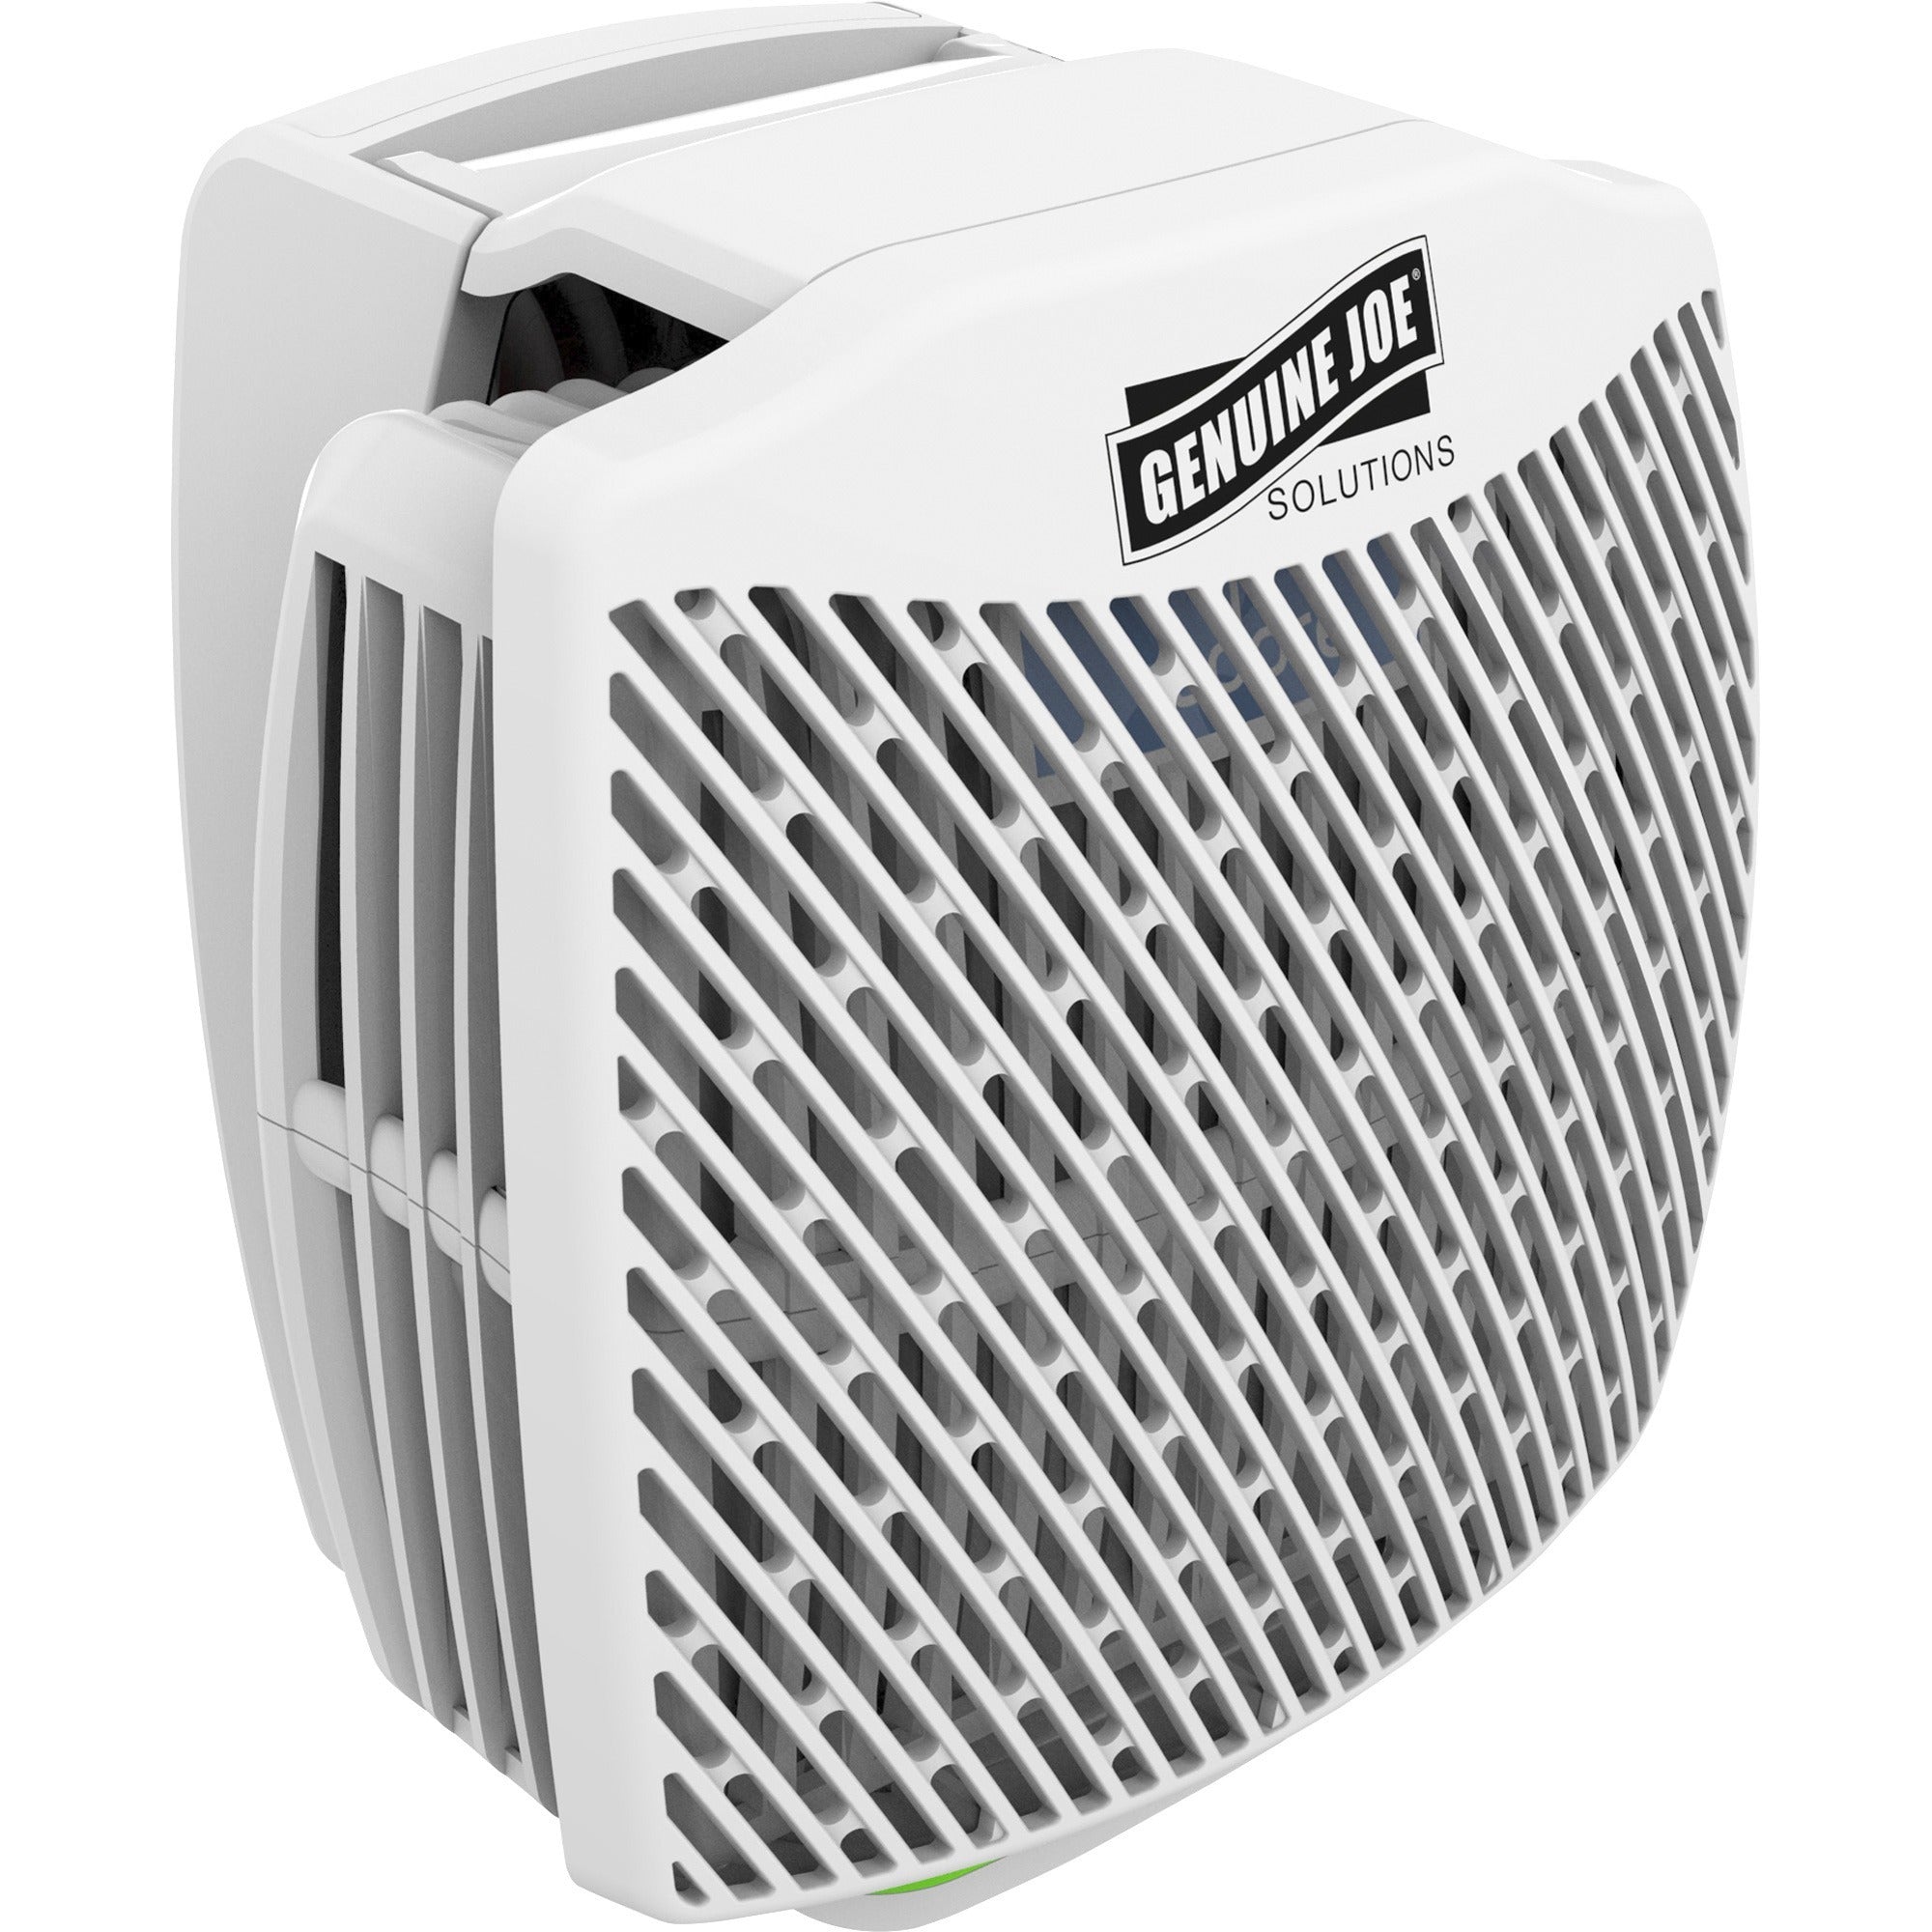 Genuine Joe Air Freshener Dispenser System - 30 Day Refill Life - 6000 ft Coverage - 1 Each - White - 4